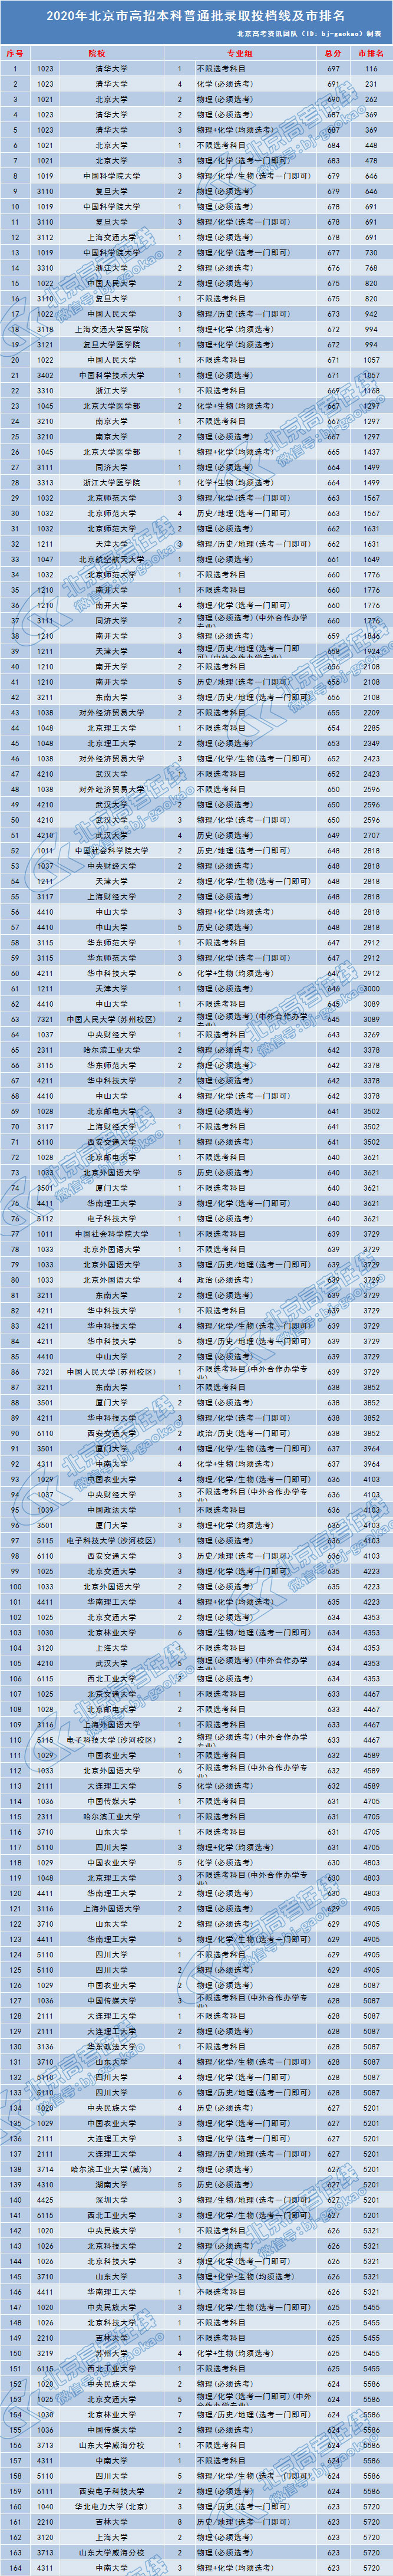 2020北京本科普通批录取投档线及市排名